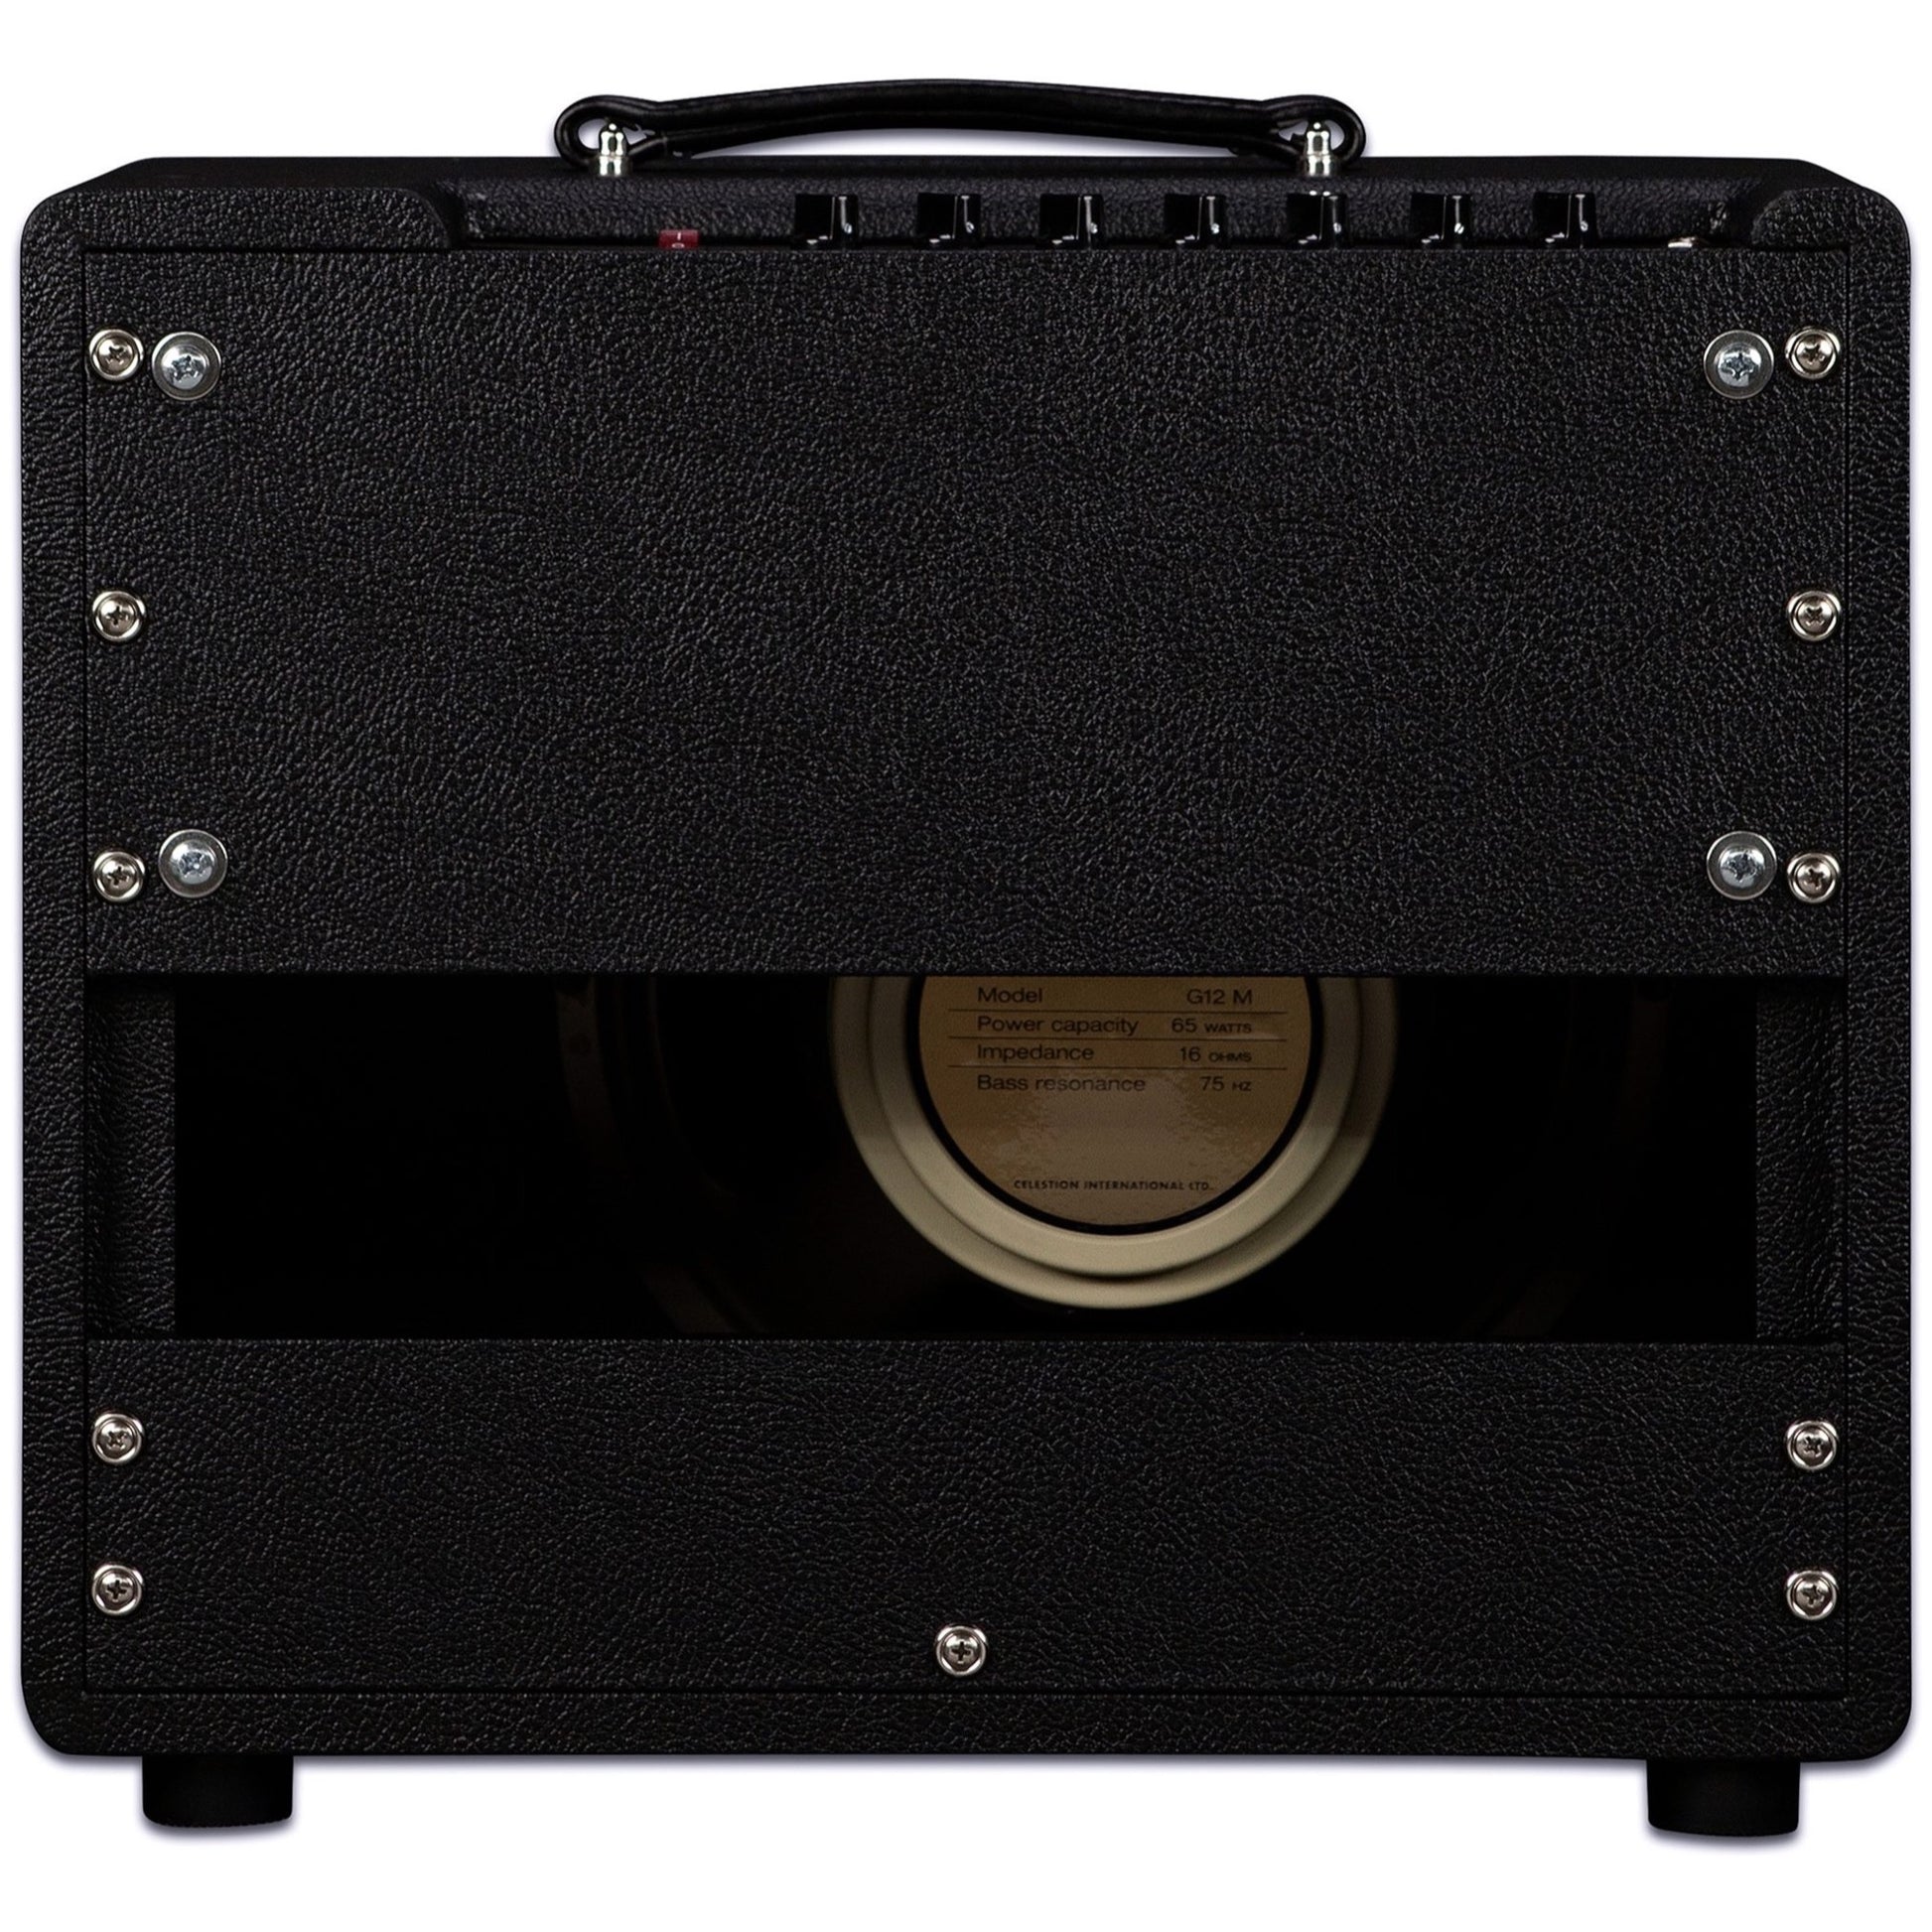 Friedman JJ Junior Jerry Cantrell Guitar Combo Amplifier (20 Watts, 1x12 Inch)